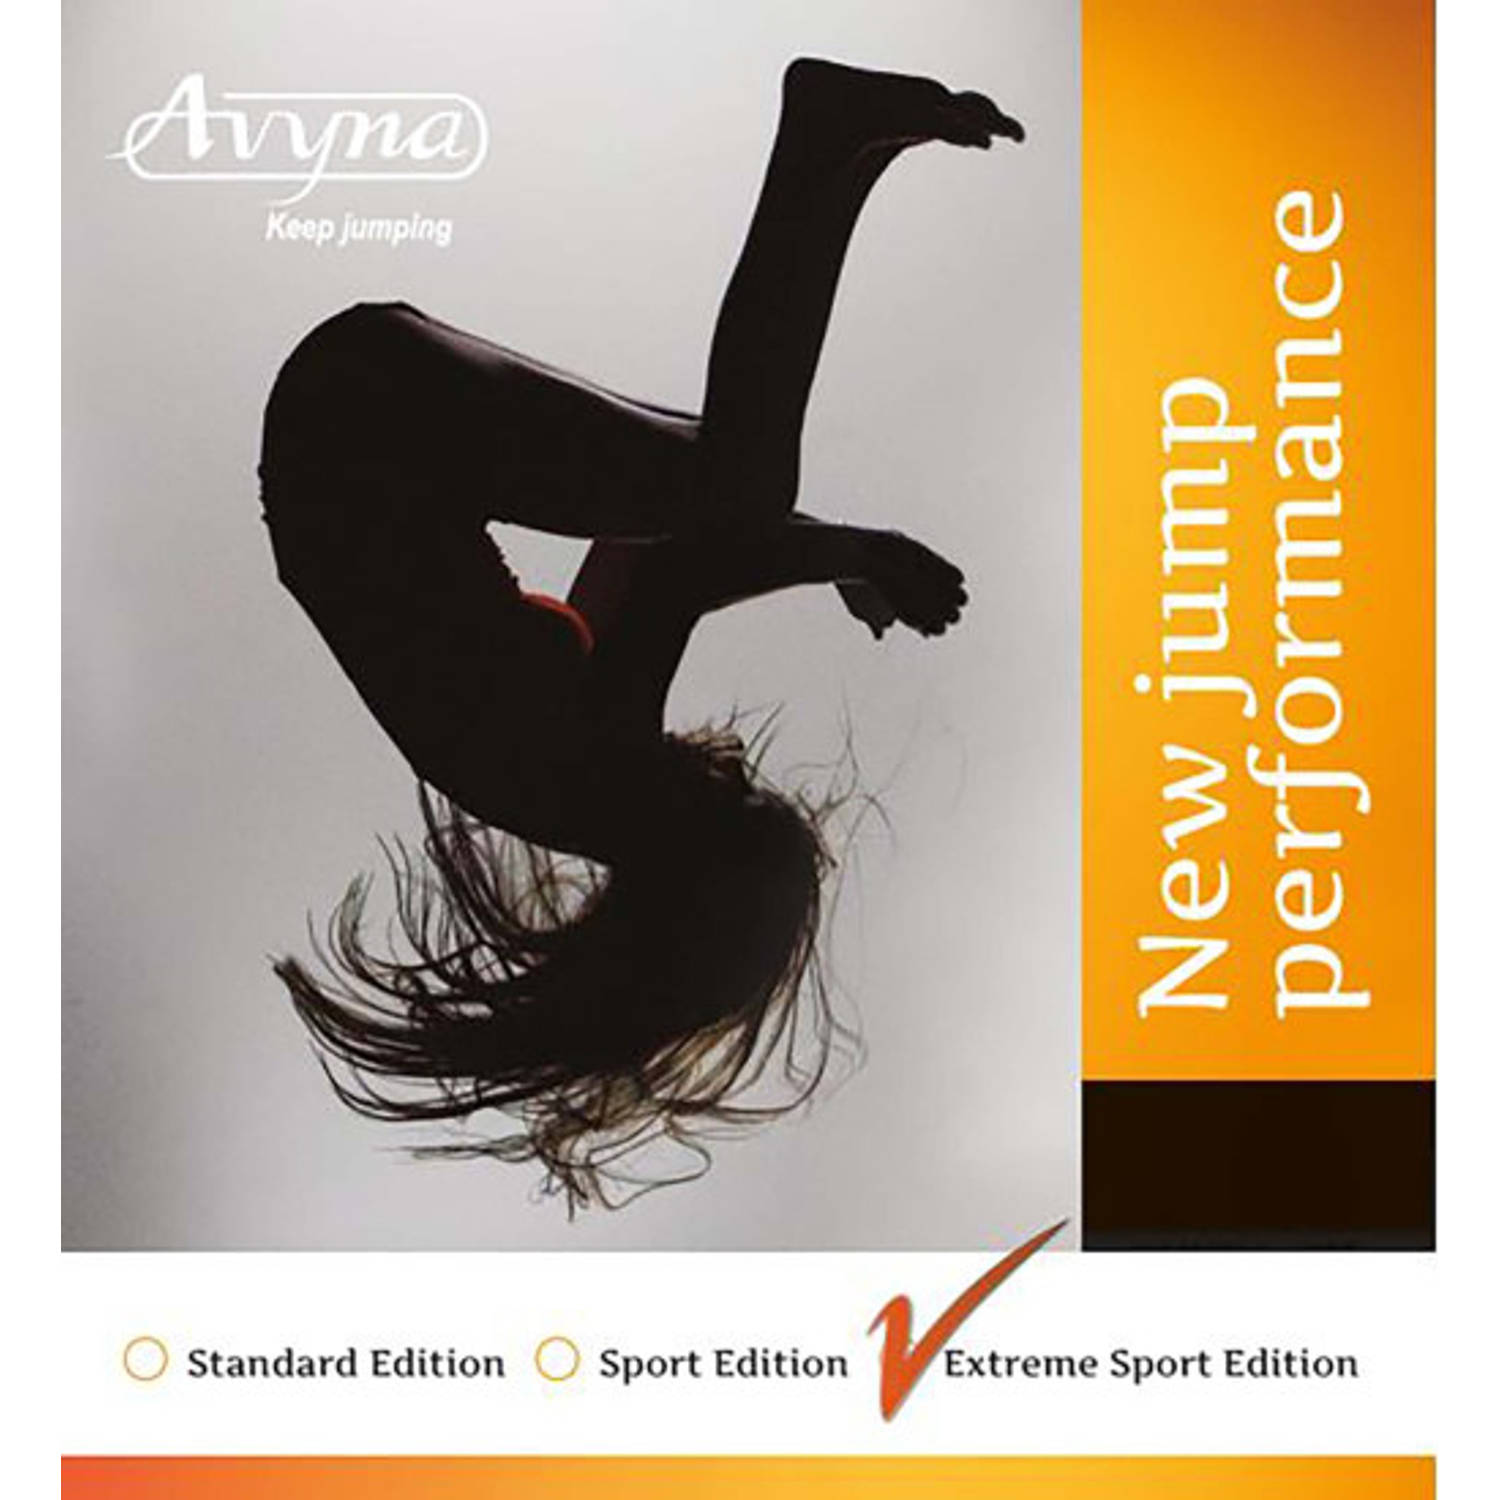 Avyna Veer 17.5cm Extreme Sport, 24* (AVSP-10-ES)